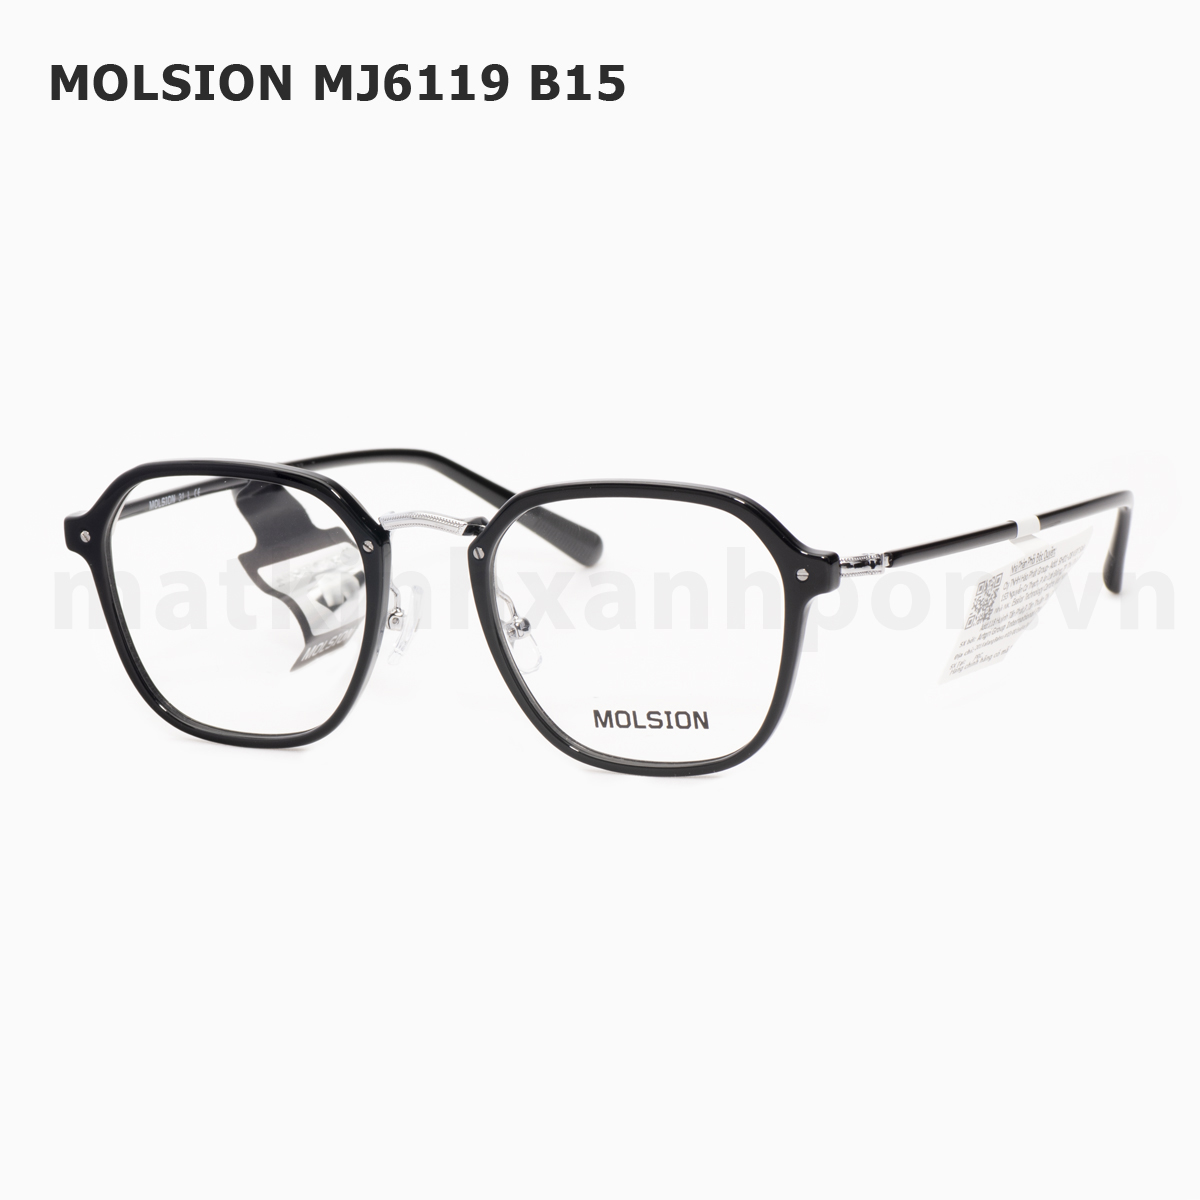 Molsion MJ6119 B15